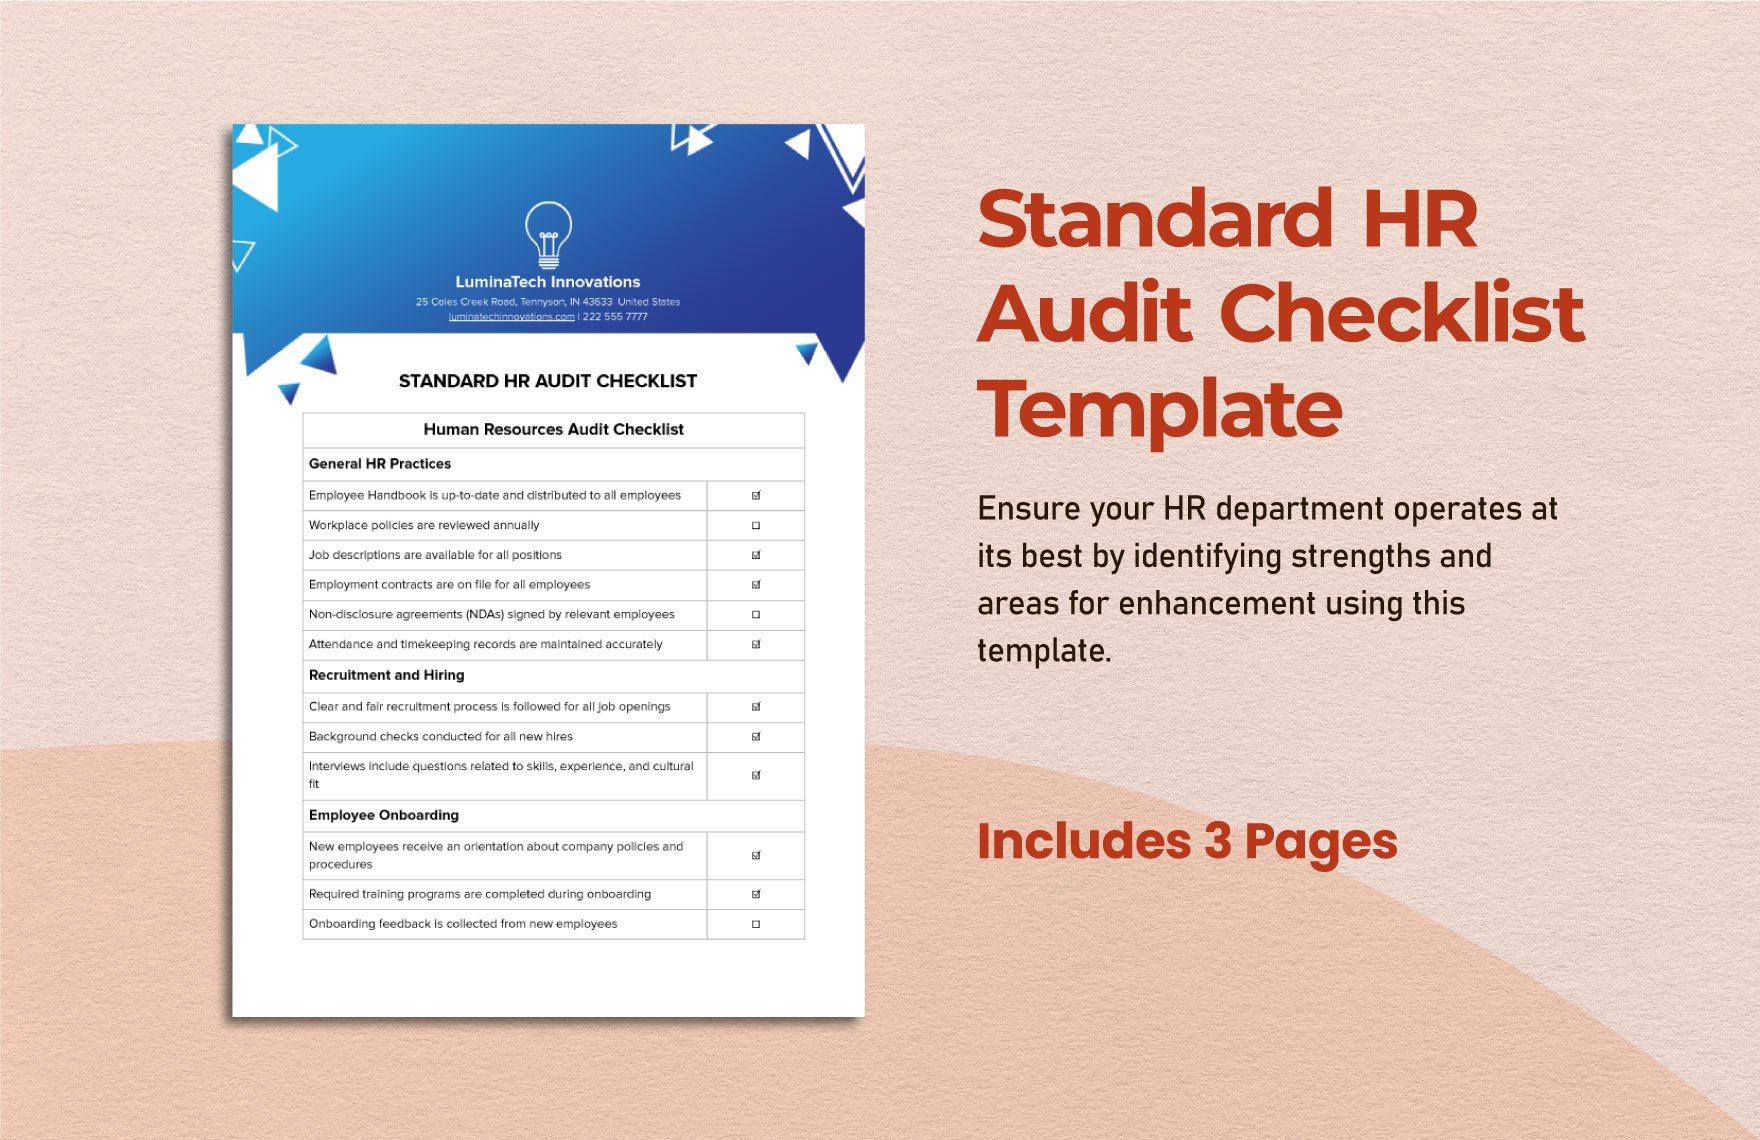 Standard HR Audit Checklist Template